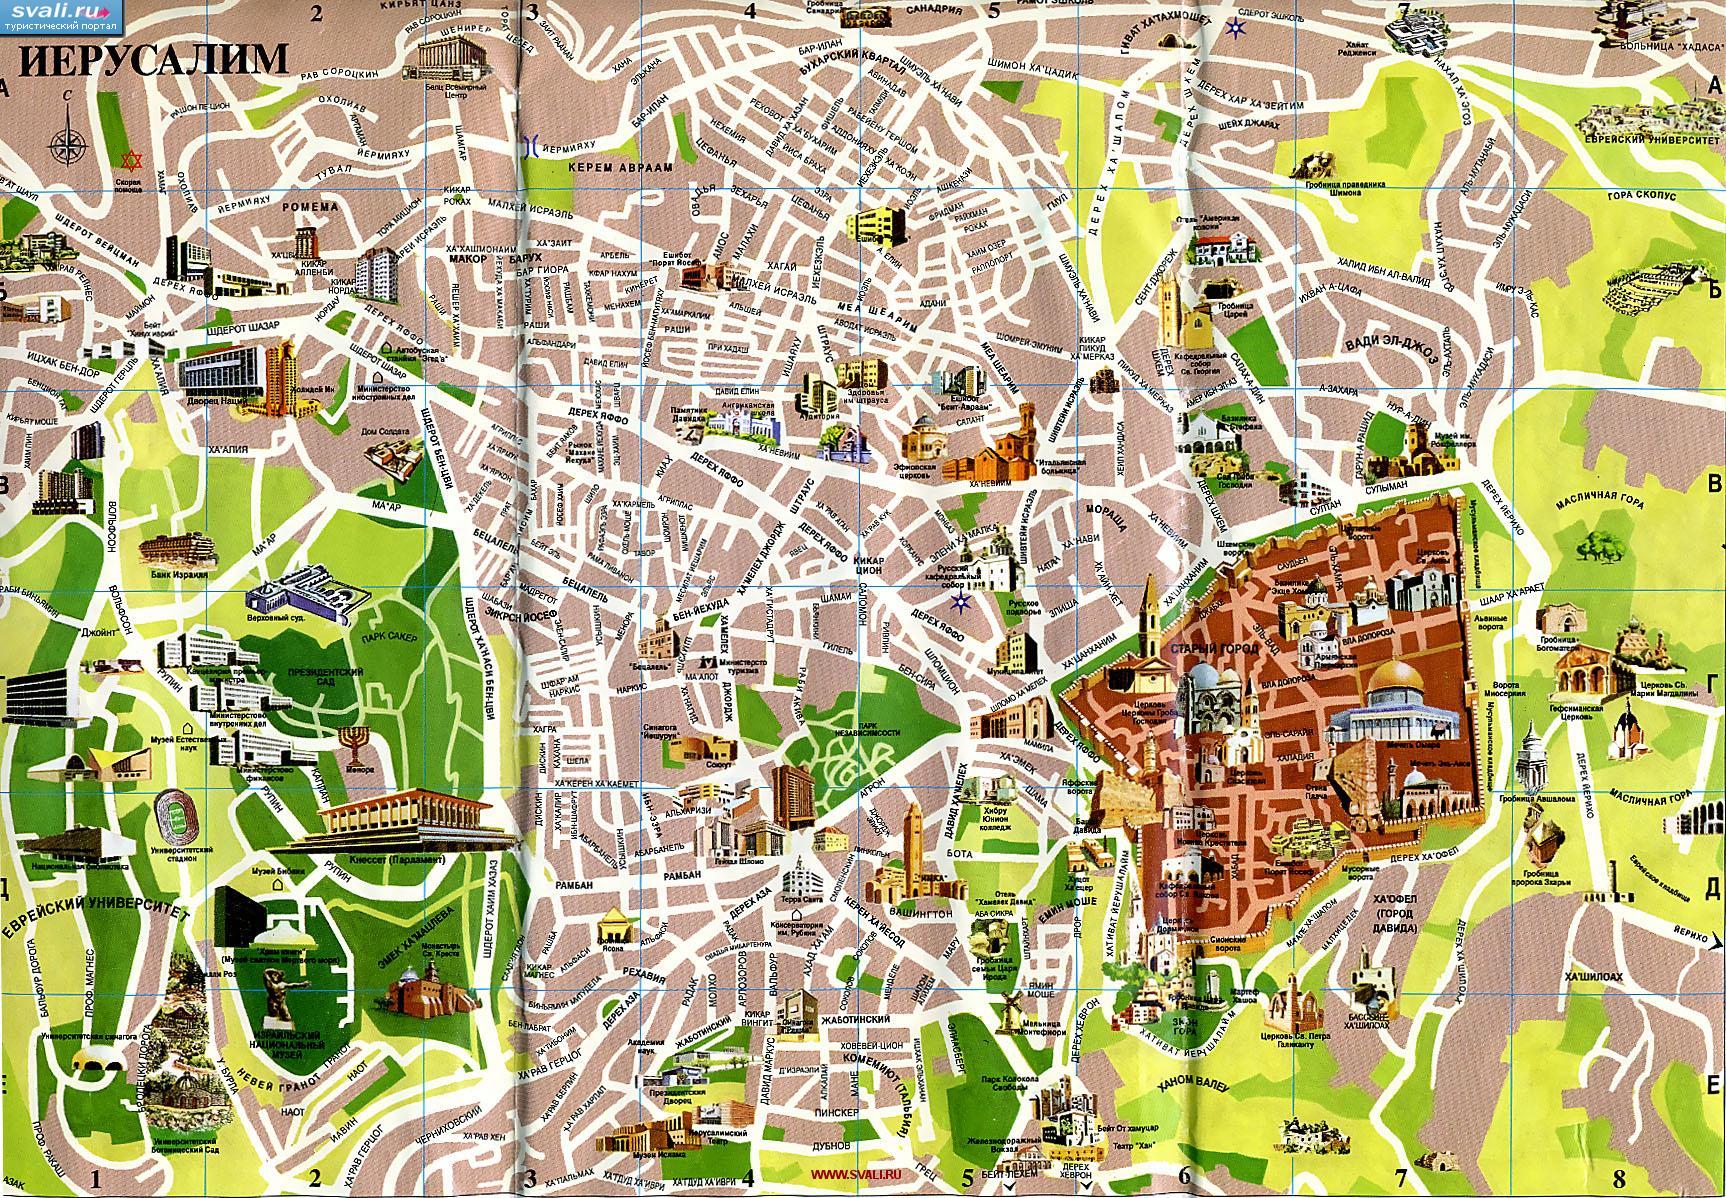 Подробная туристическая карта Иерусалима на русском языке с указанием достопримечательностей, Израиль.